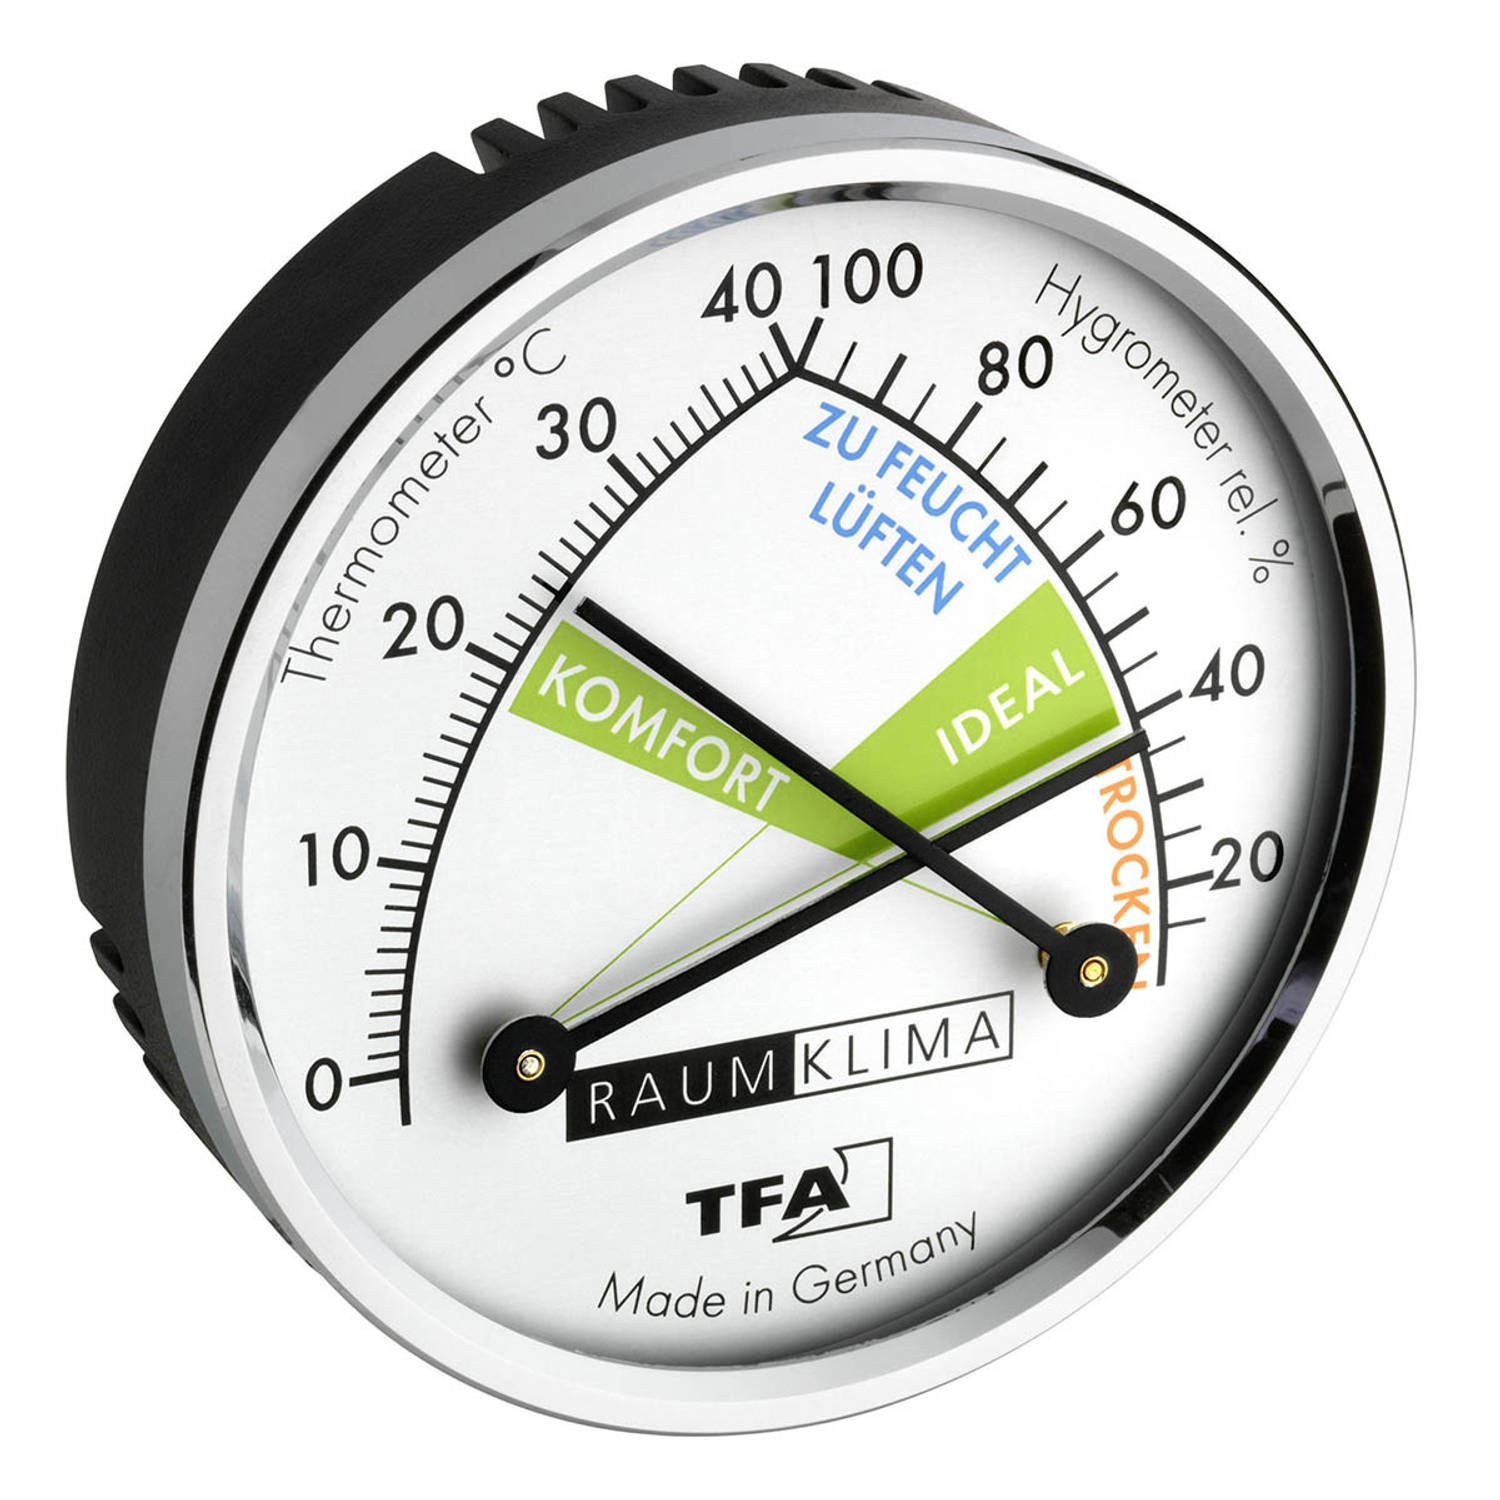 Wrok IJver Decoderen TFA Analoge Thermo-Hygrometer met Metalen Ring | Blokker